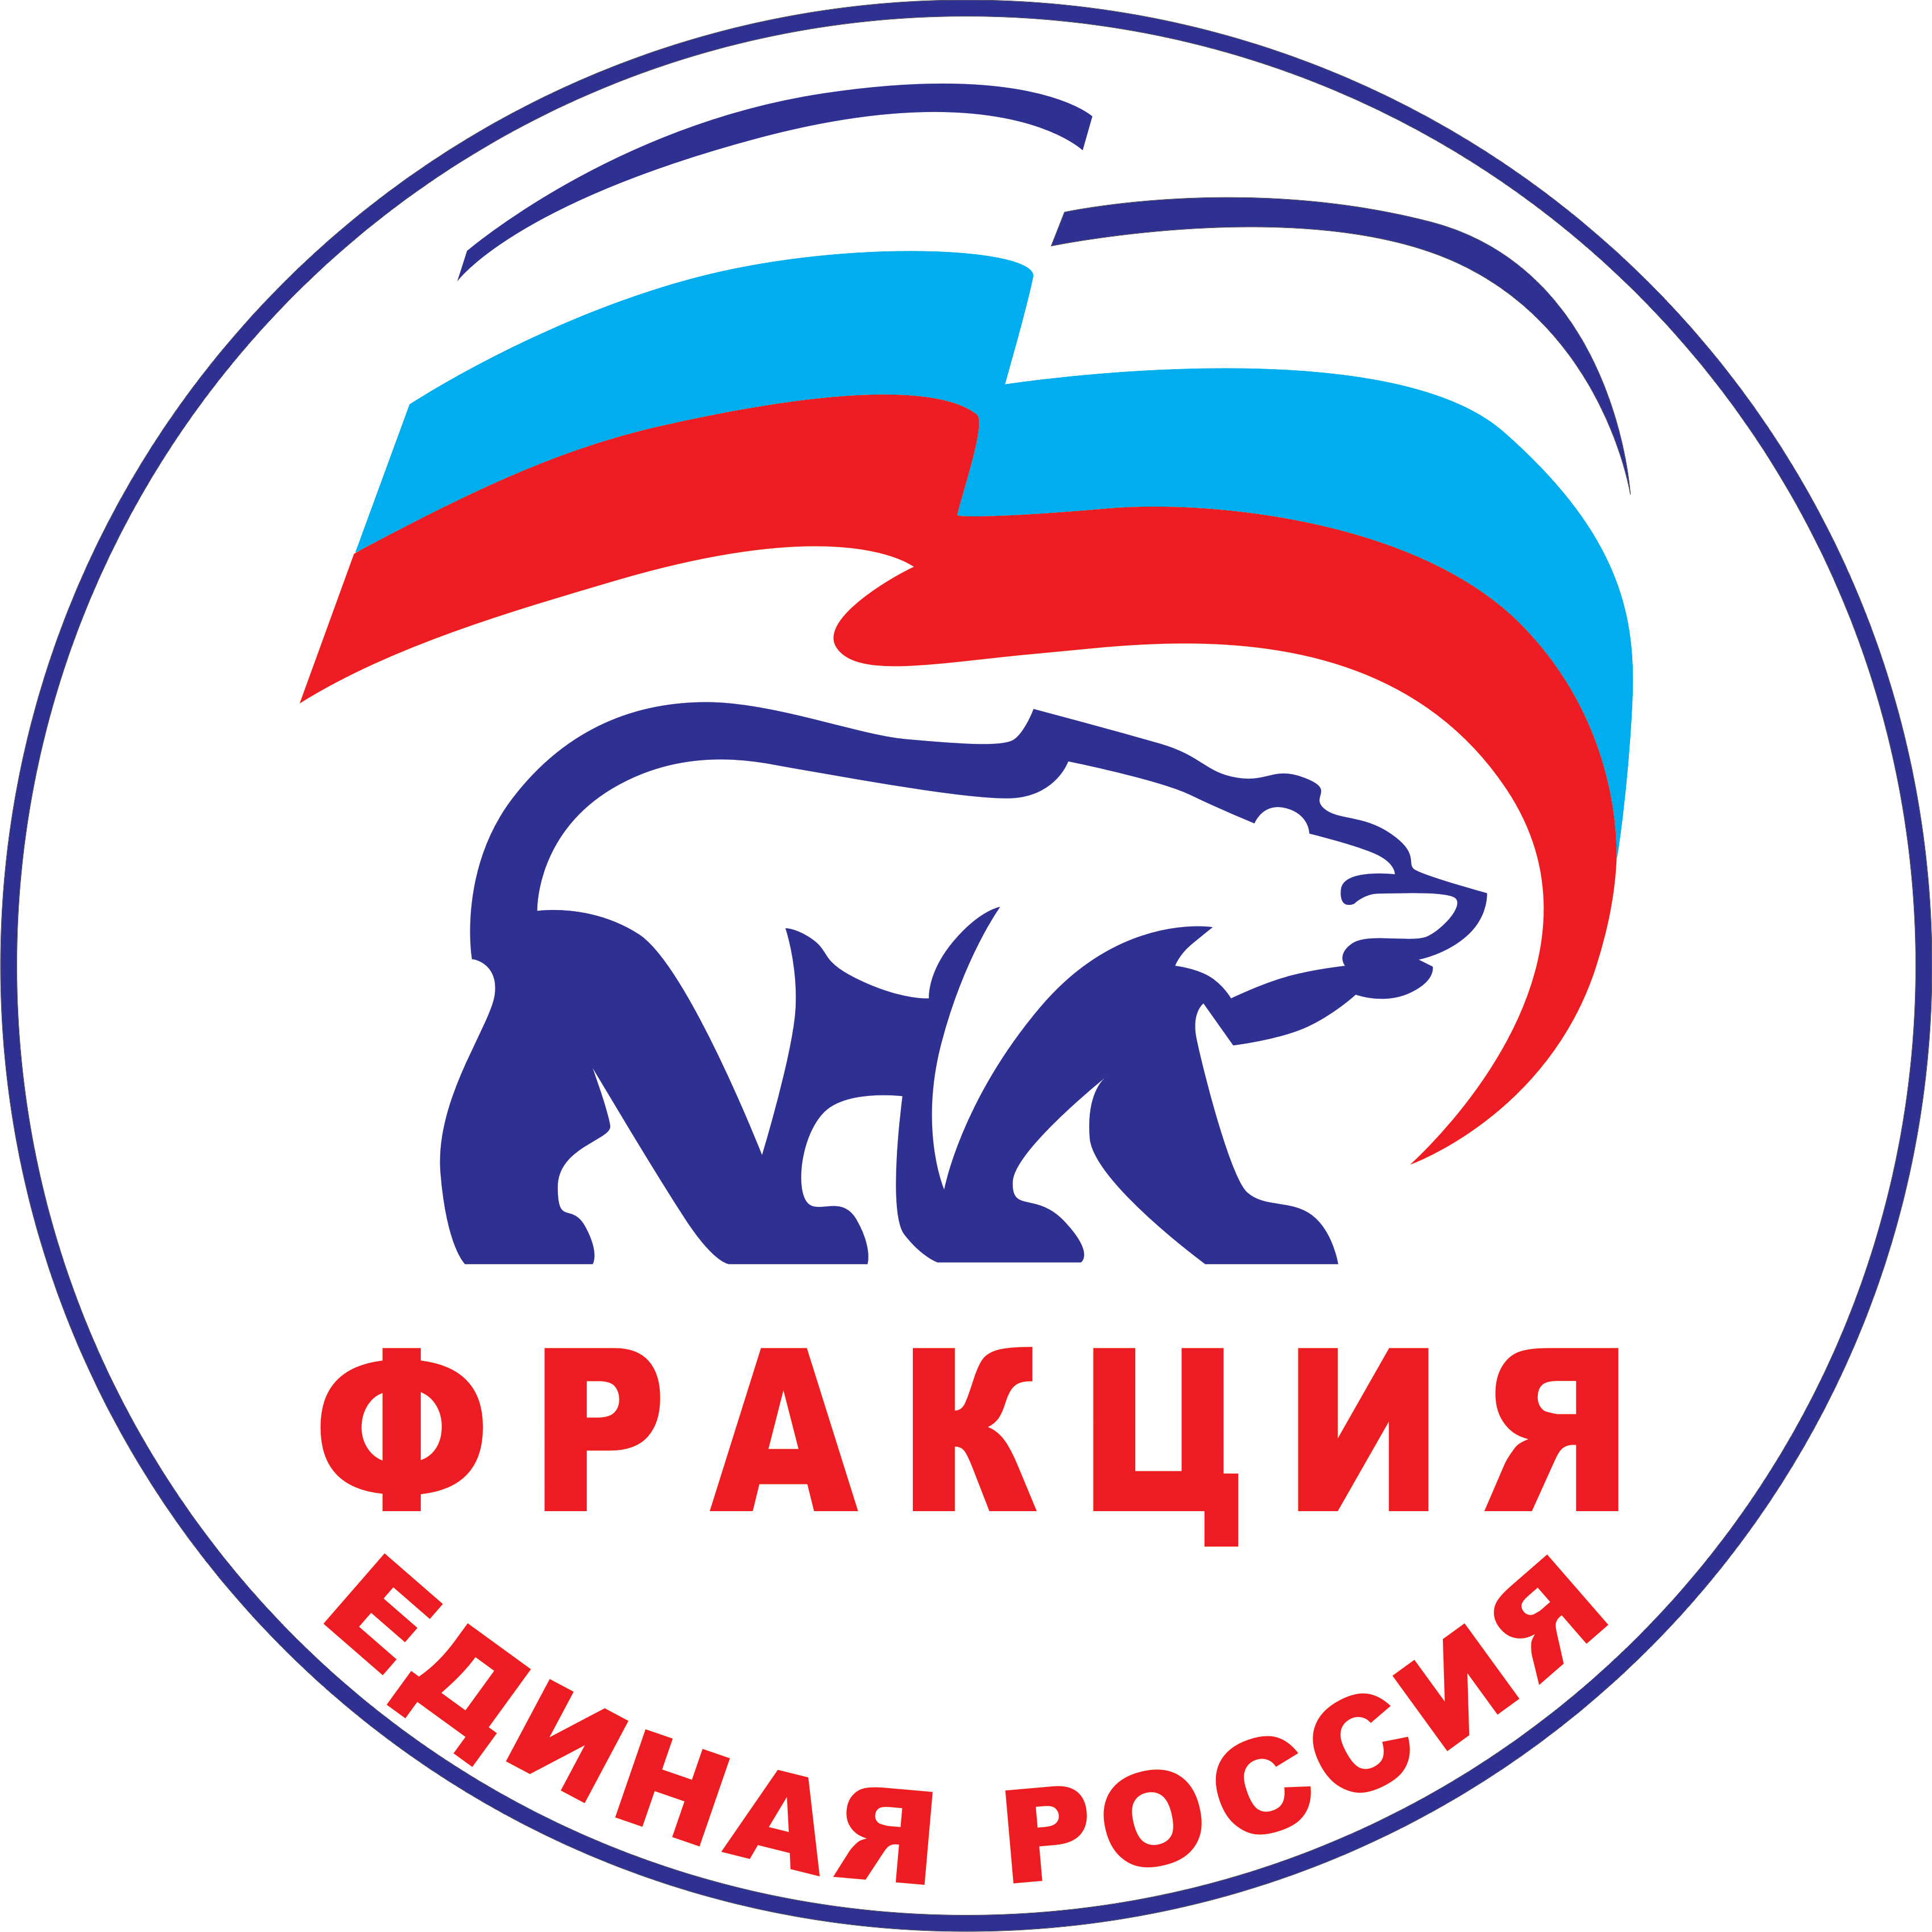 Логотип Единой России на прозрачном фоне